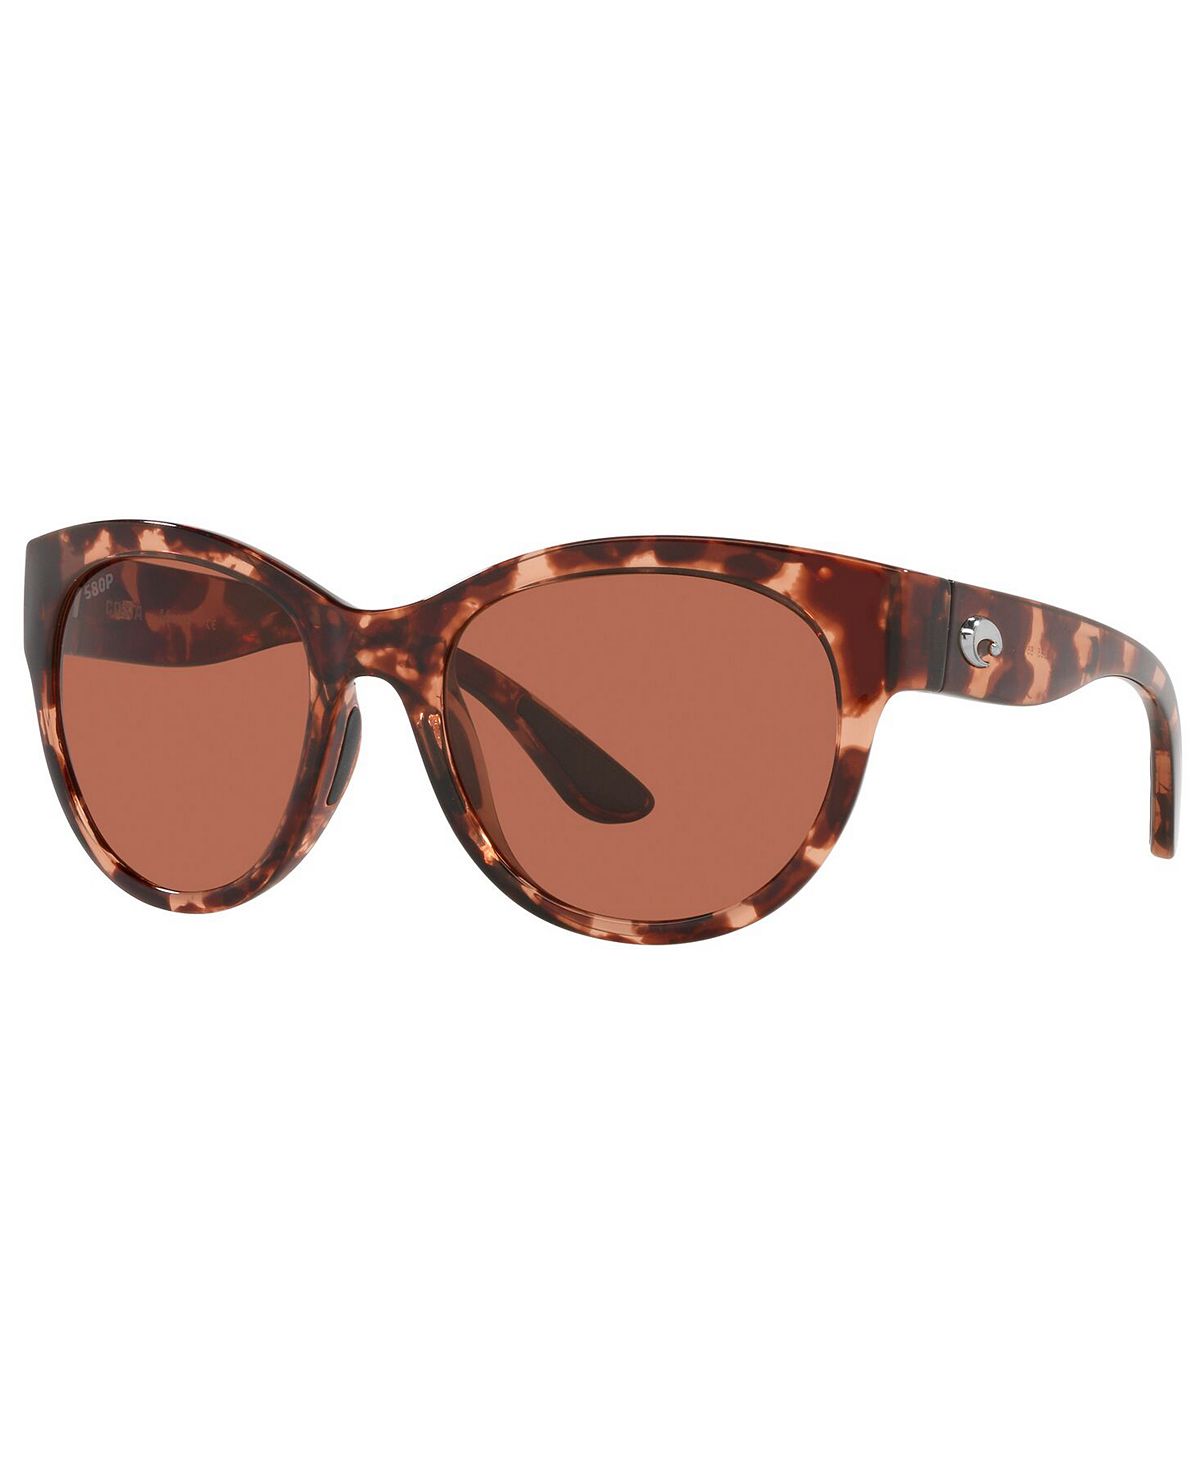 Поляризованные солнцезащитные очки MAYA, 6S9011 55 Costa Del Mar